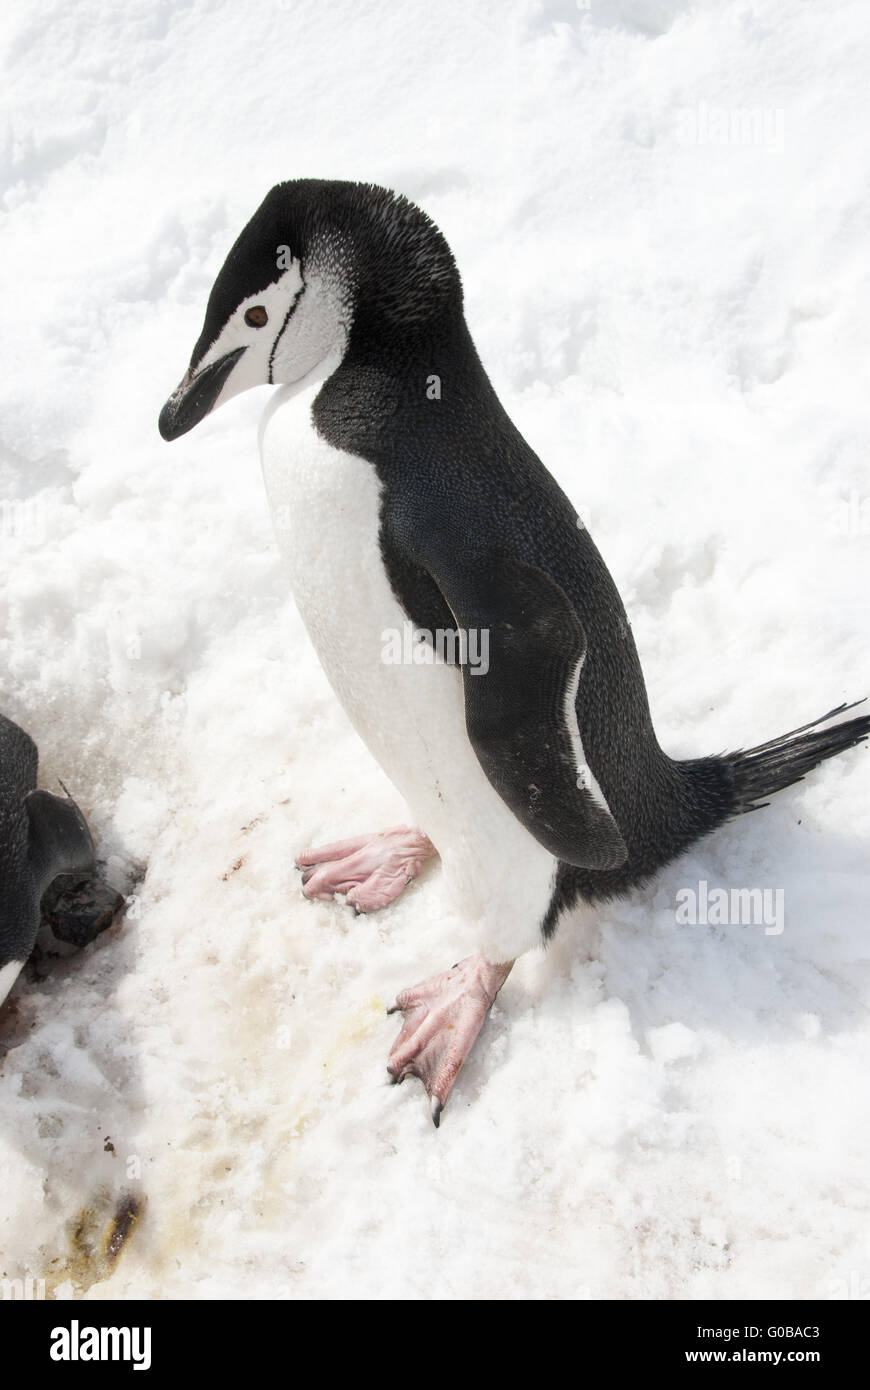 Pinguino antartico nella neve. Foto Stock